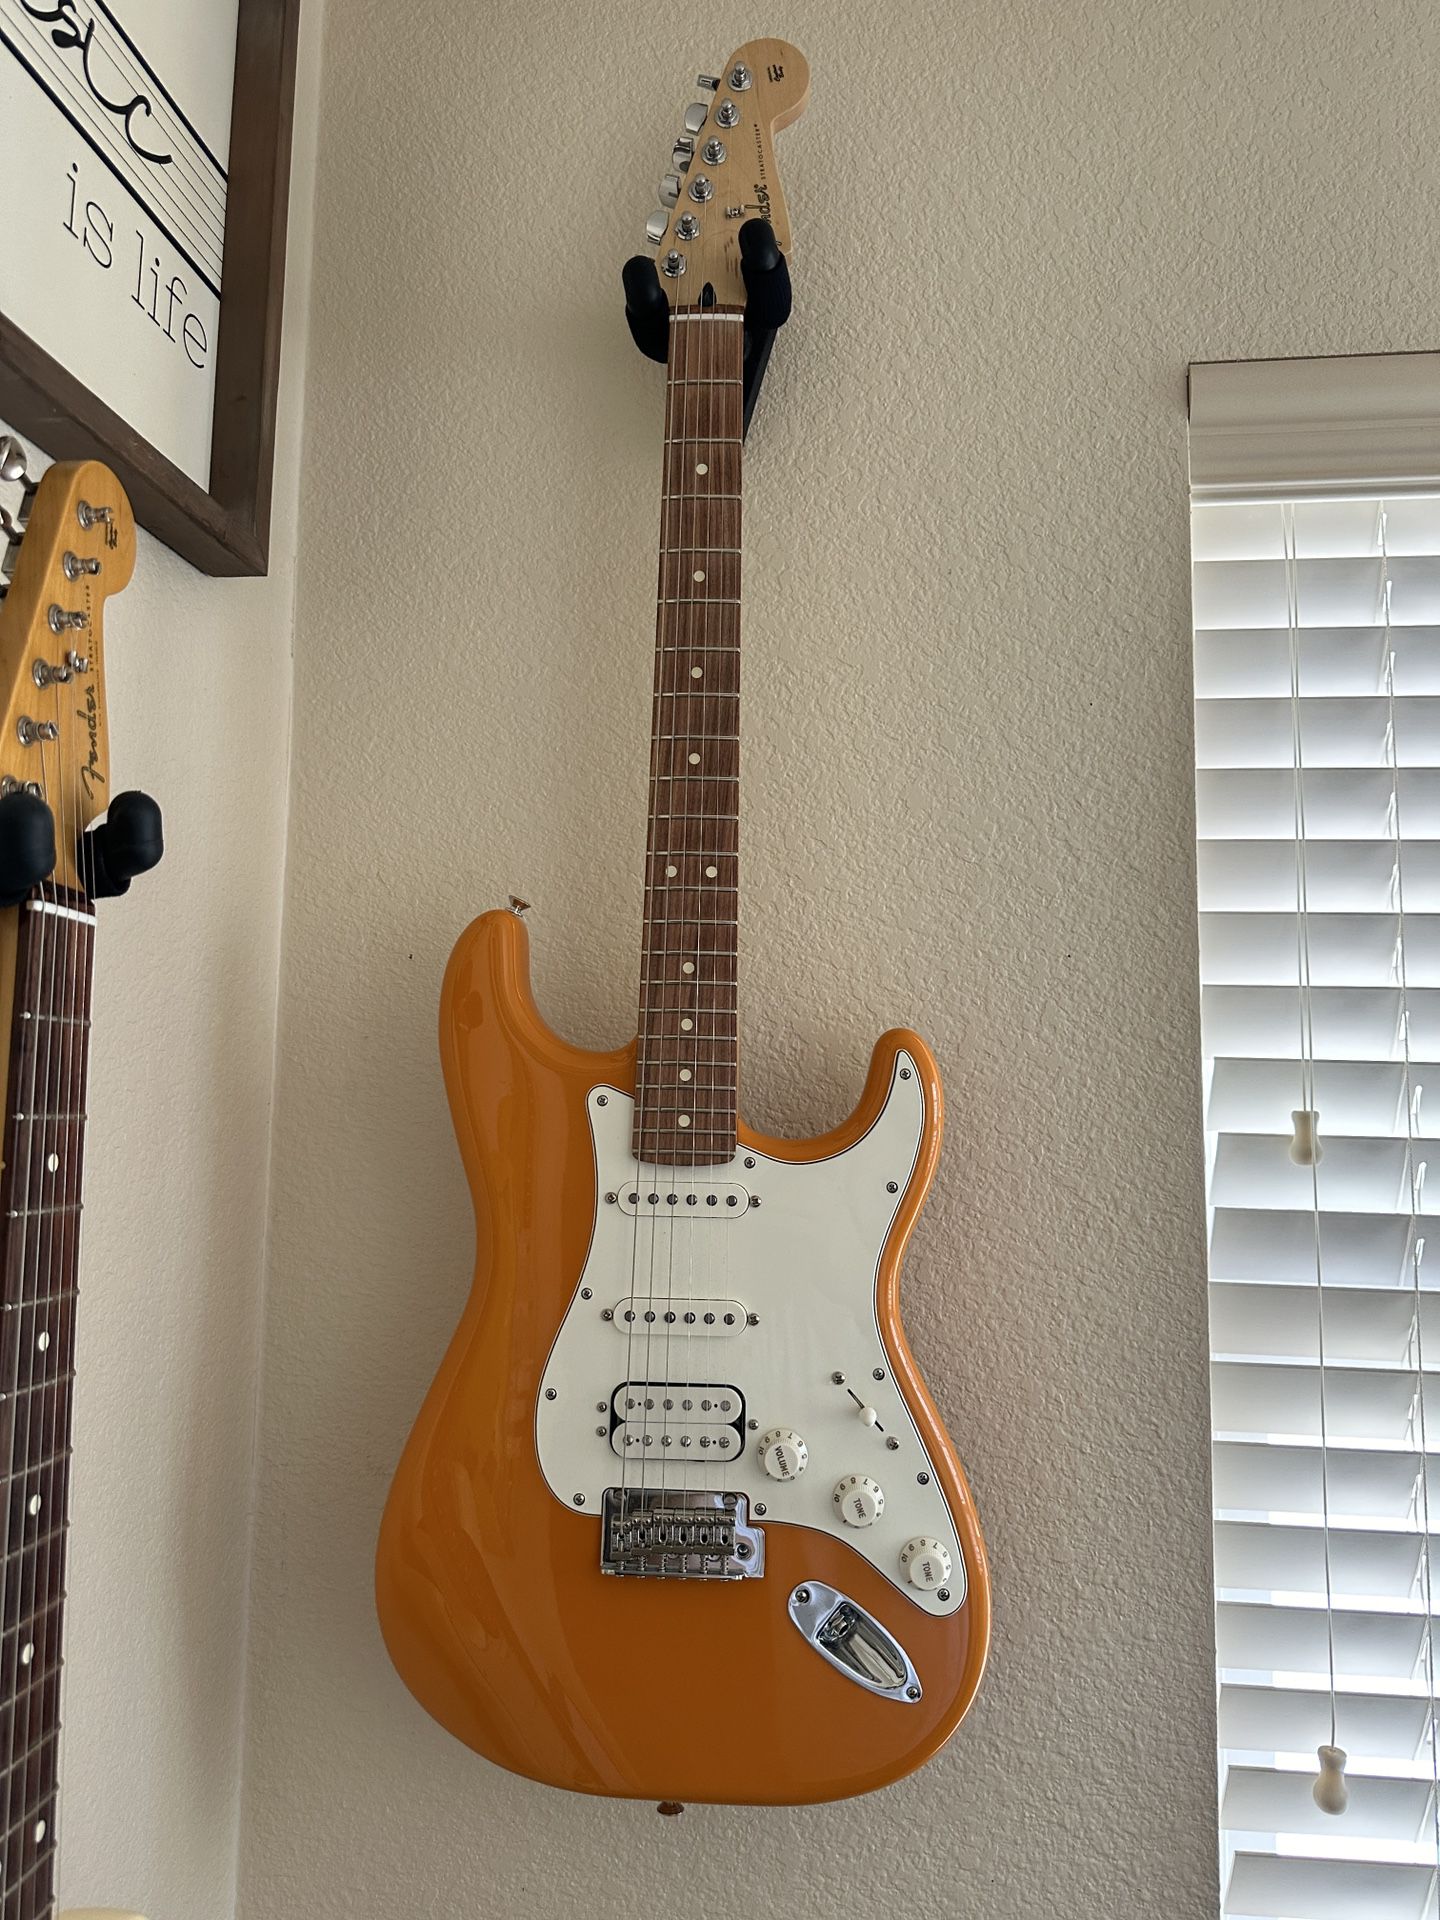 Fender Strat - Stratocaster HSS